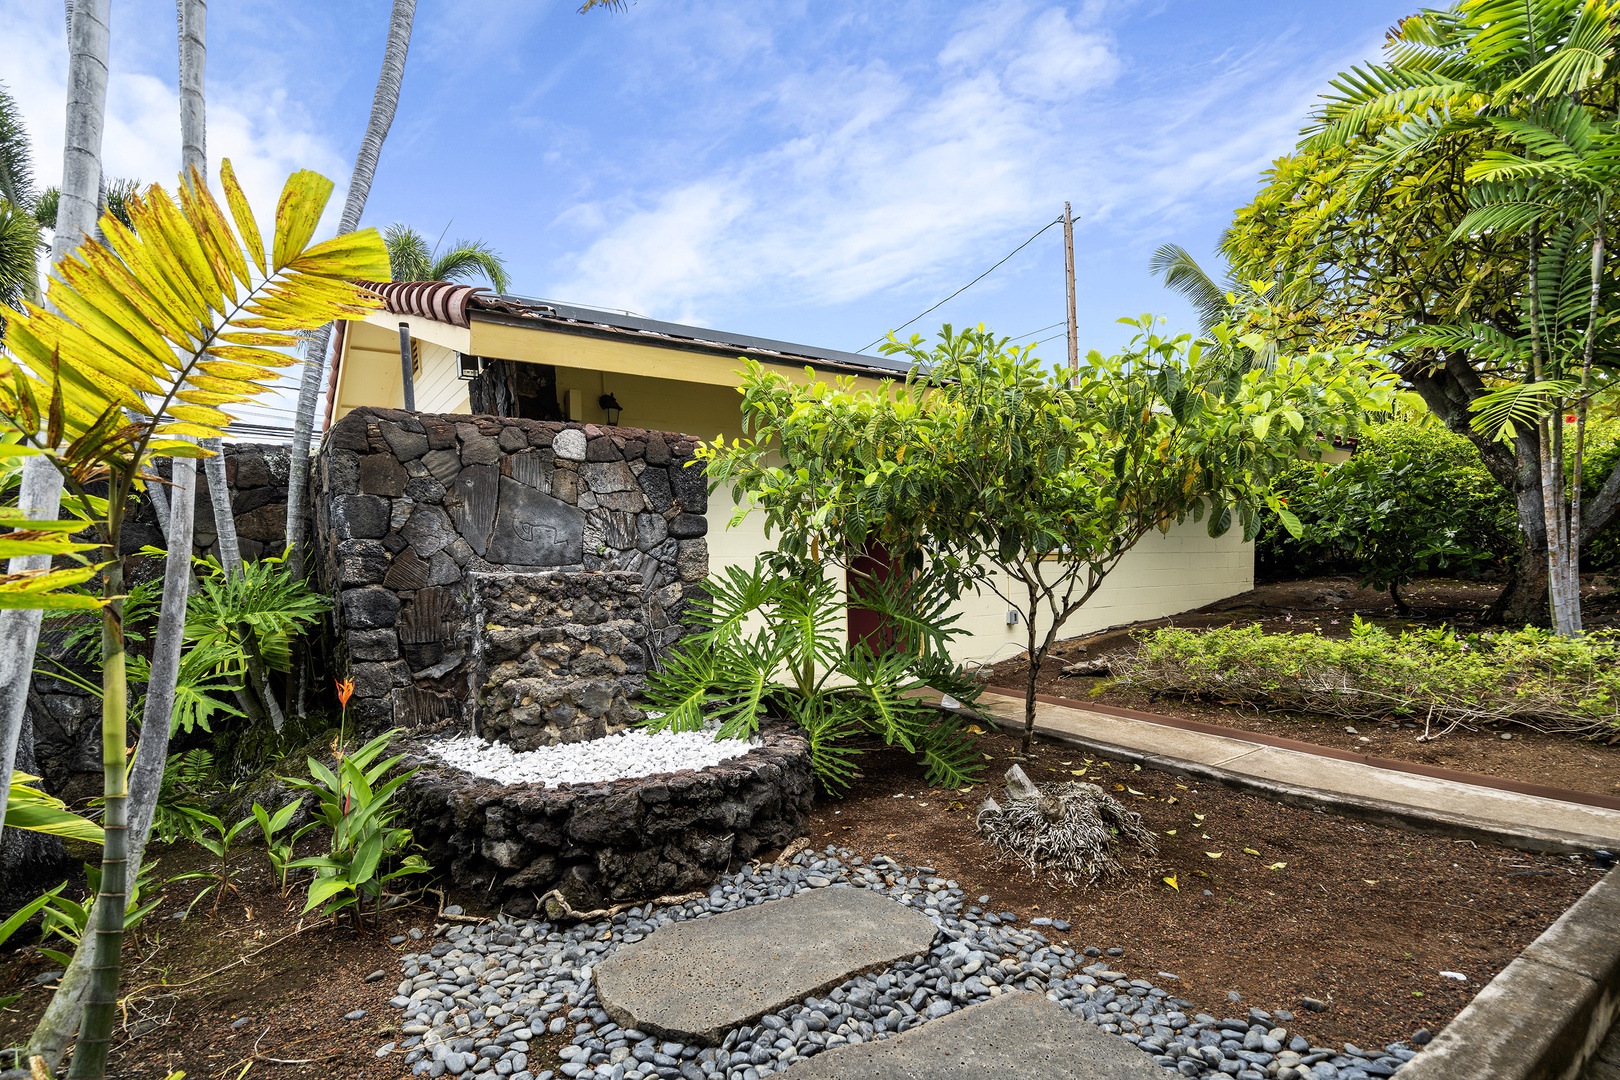 Kailua Kona Vacation Rentals, Hale Pua - Side yard meditation area outside of the game room